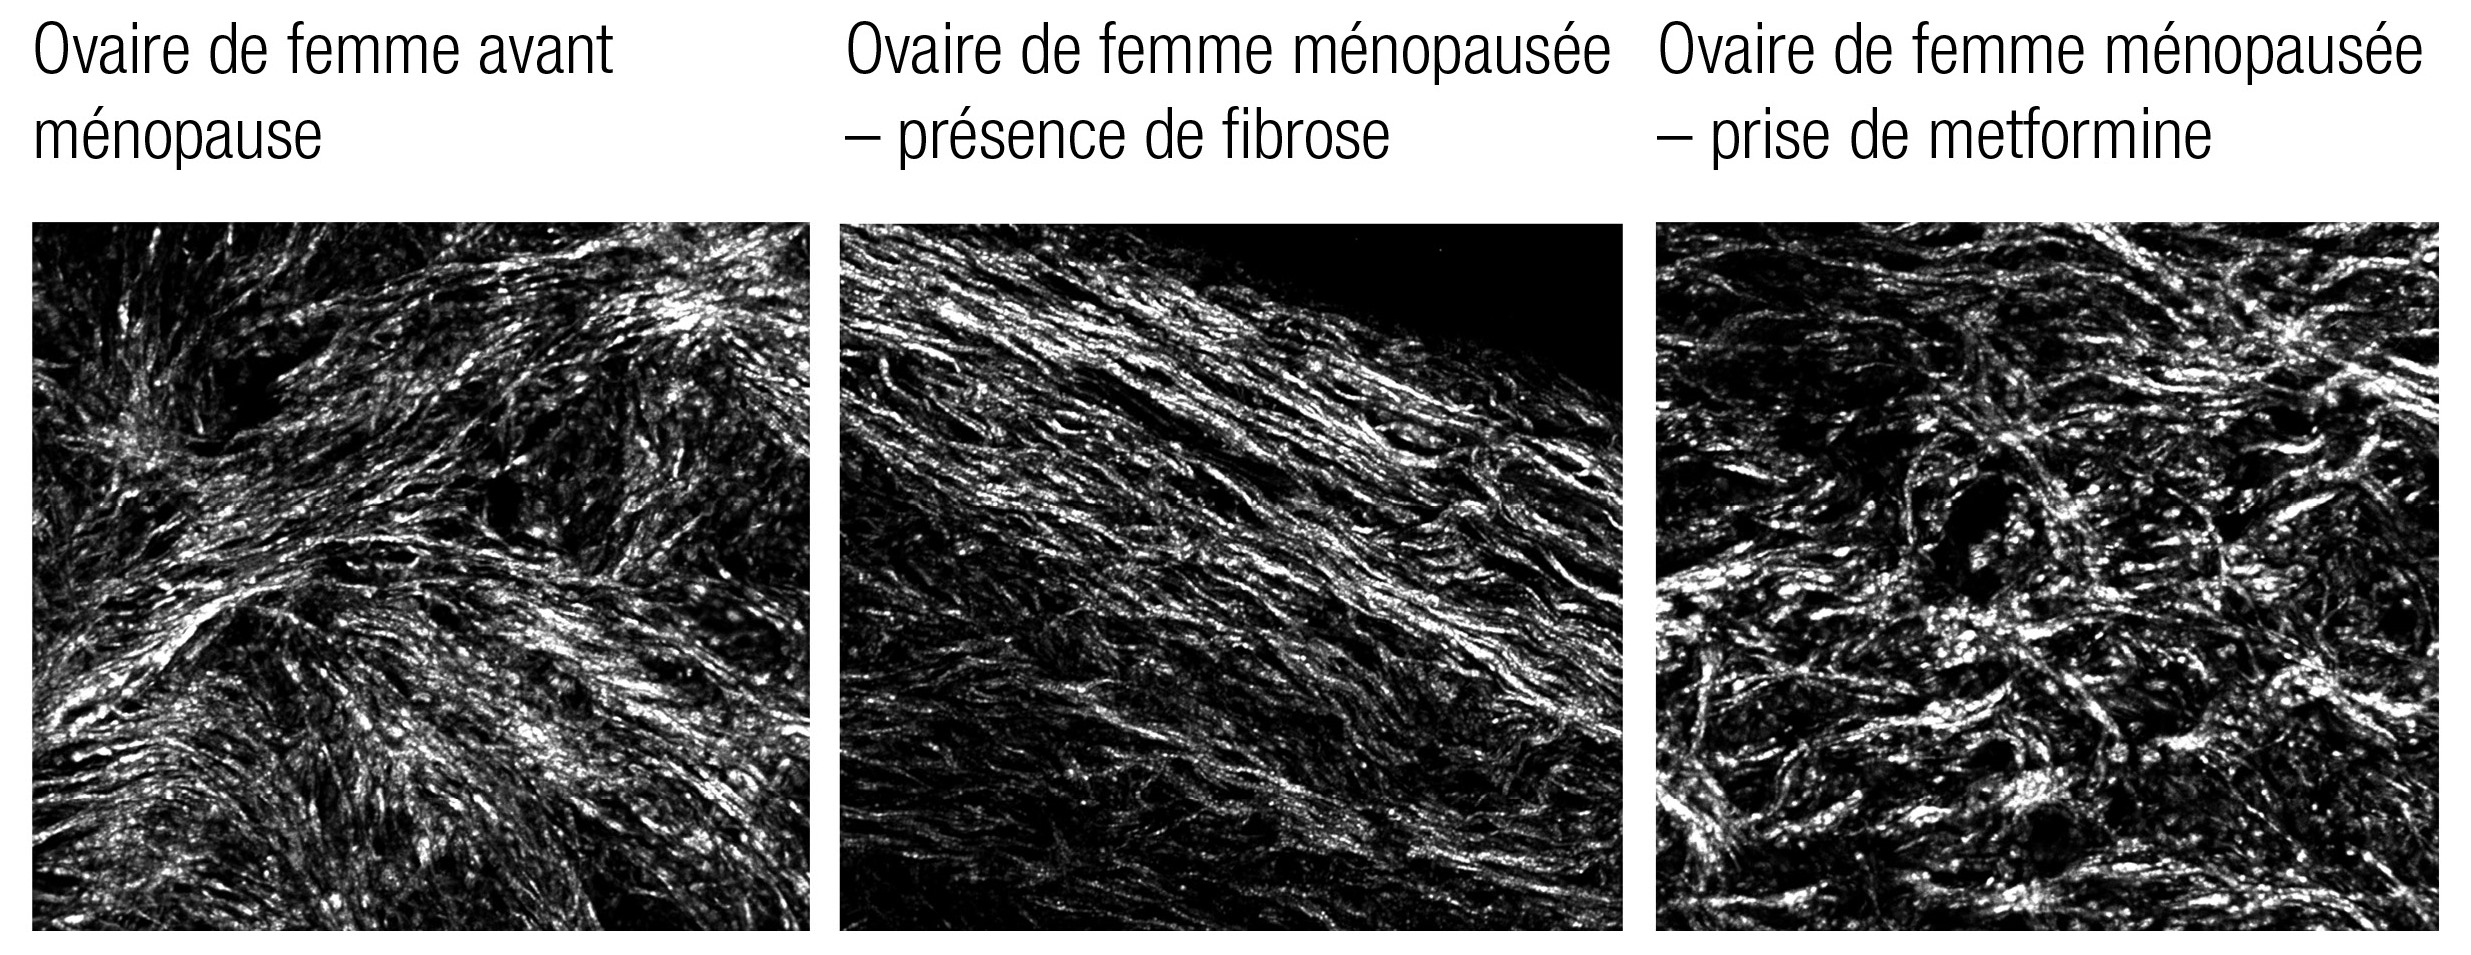 Selon les observations de chercheurs, la fibrose des ovaires (fibres parallèles lisses dans l’image centrale) survient avec l’âge. L’équipe de recherche a conclu que les ovaires de femmes ménopausées qui prennent de la metformine, un médicament contre le diabète, ne présentaient pas de fibrose.